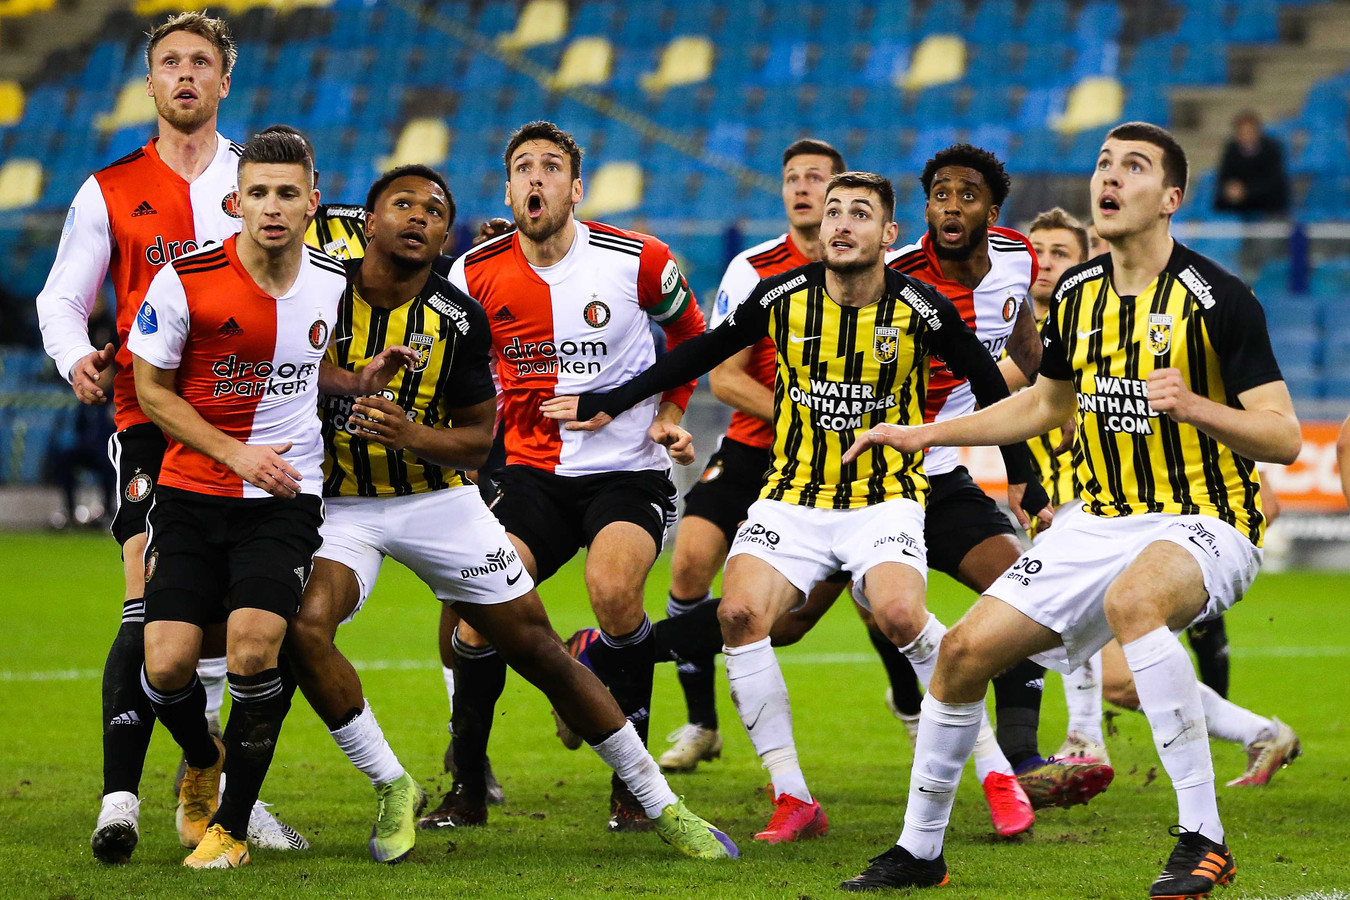 Drukte in het strafschopgebied van Vitesse, bij de topper in GelreDome van dit seizoen. Vitesse strijdt nu in De Kuip met Feyenoord om Europees voetbal.